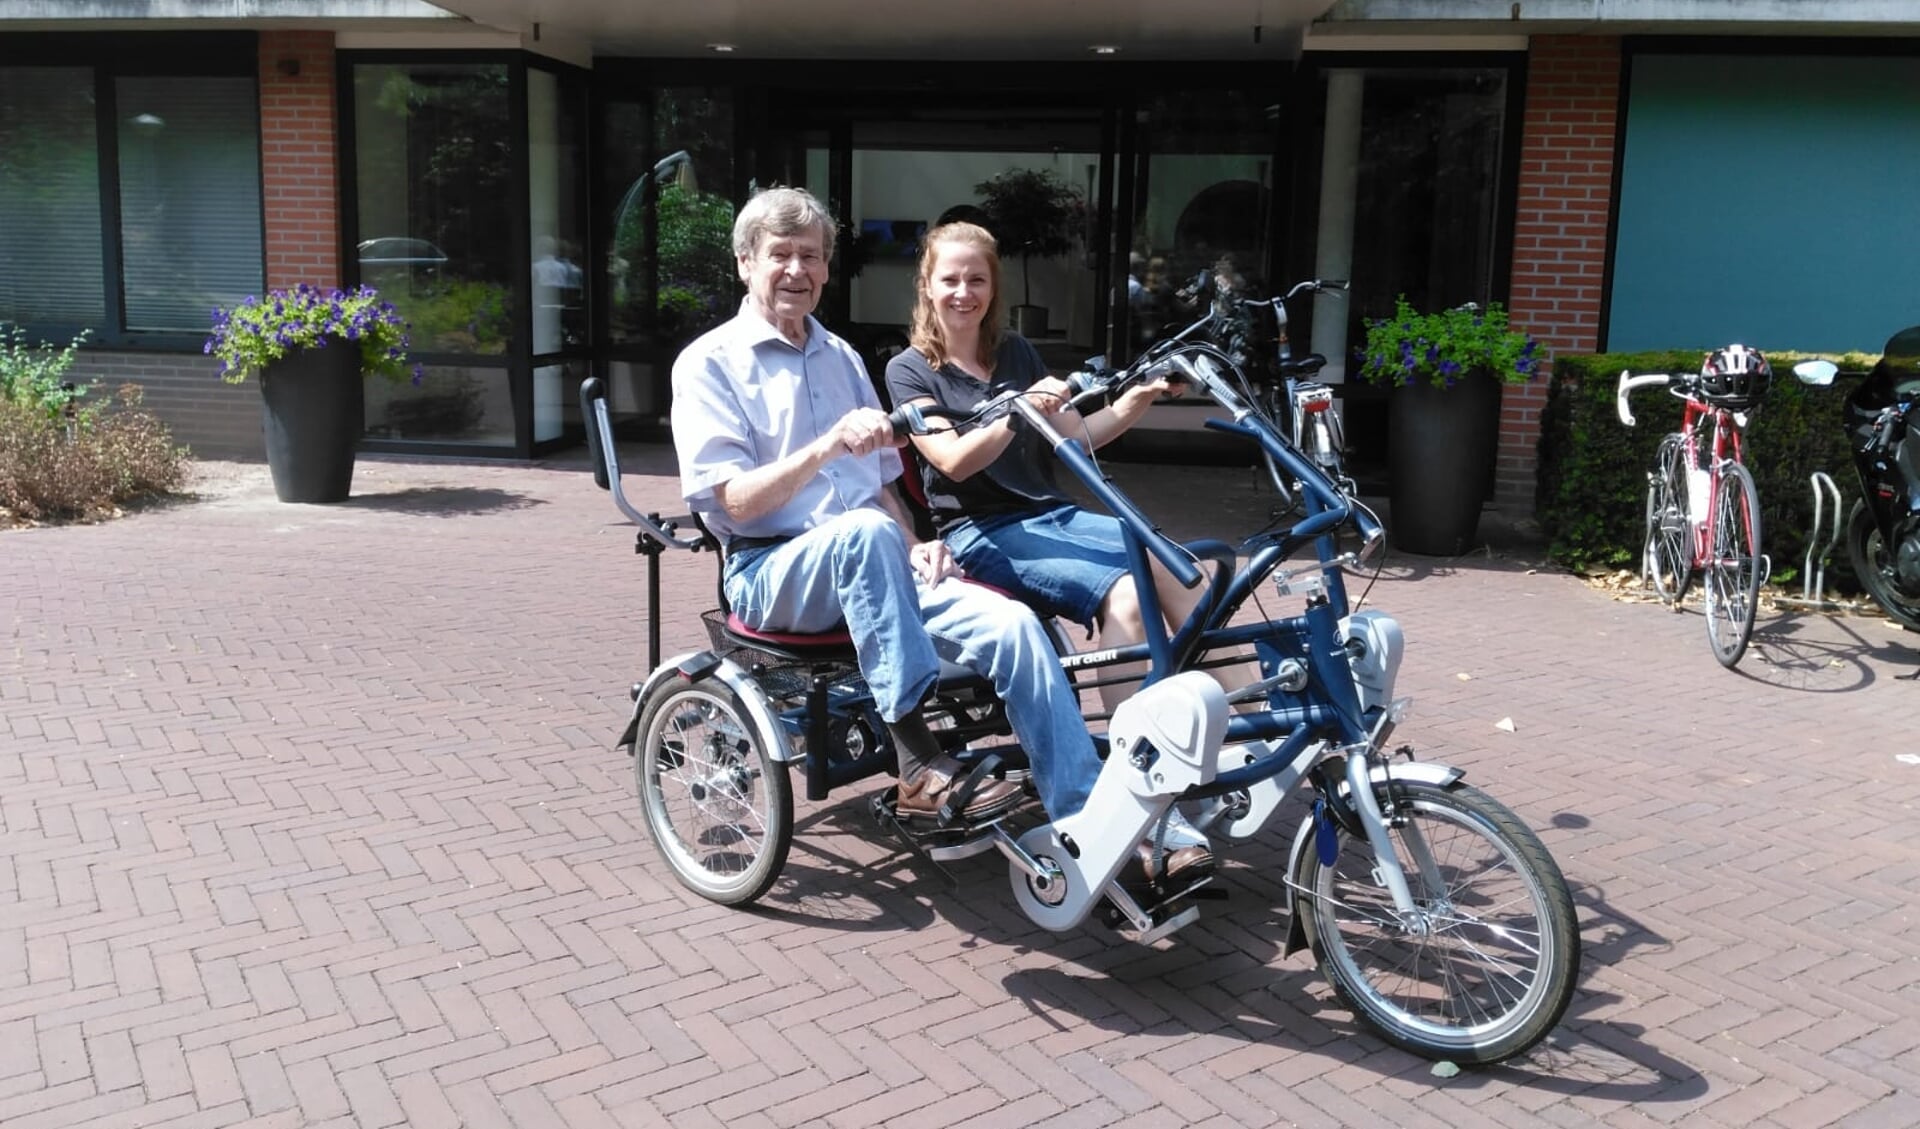 Bewoner Joost van Suchtelen gaat een rondje fietsen met medewerker Mariska van de Riet.